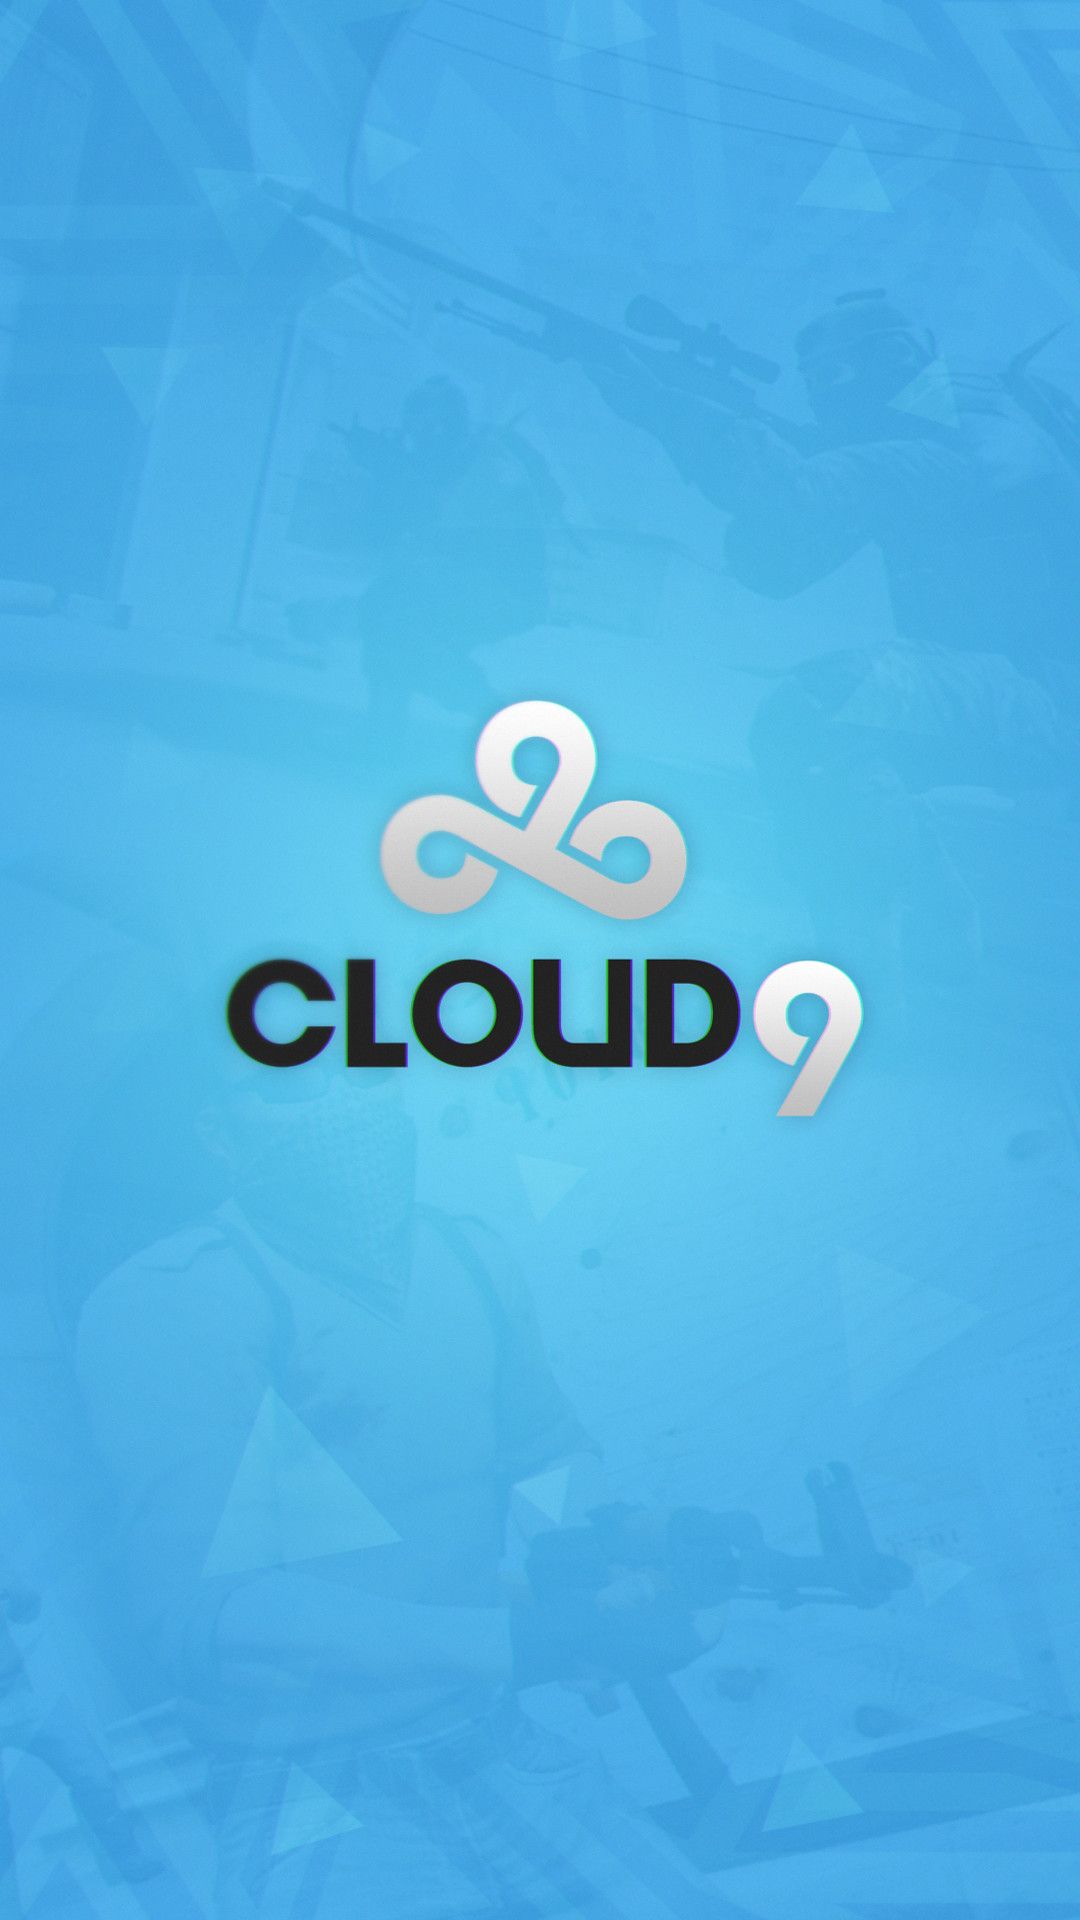 48+] Cloud 9 Wallpaper - WallpaperSafari